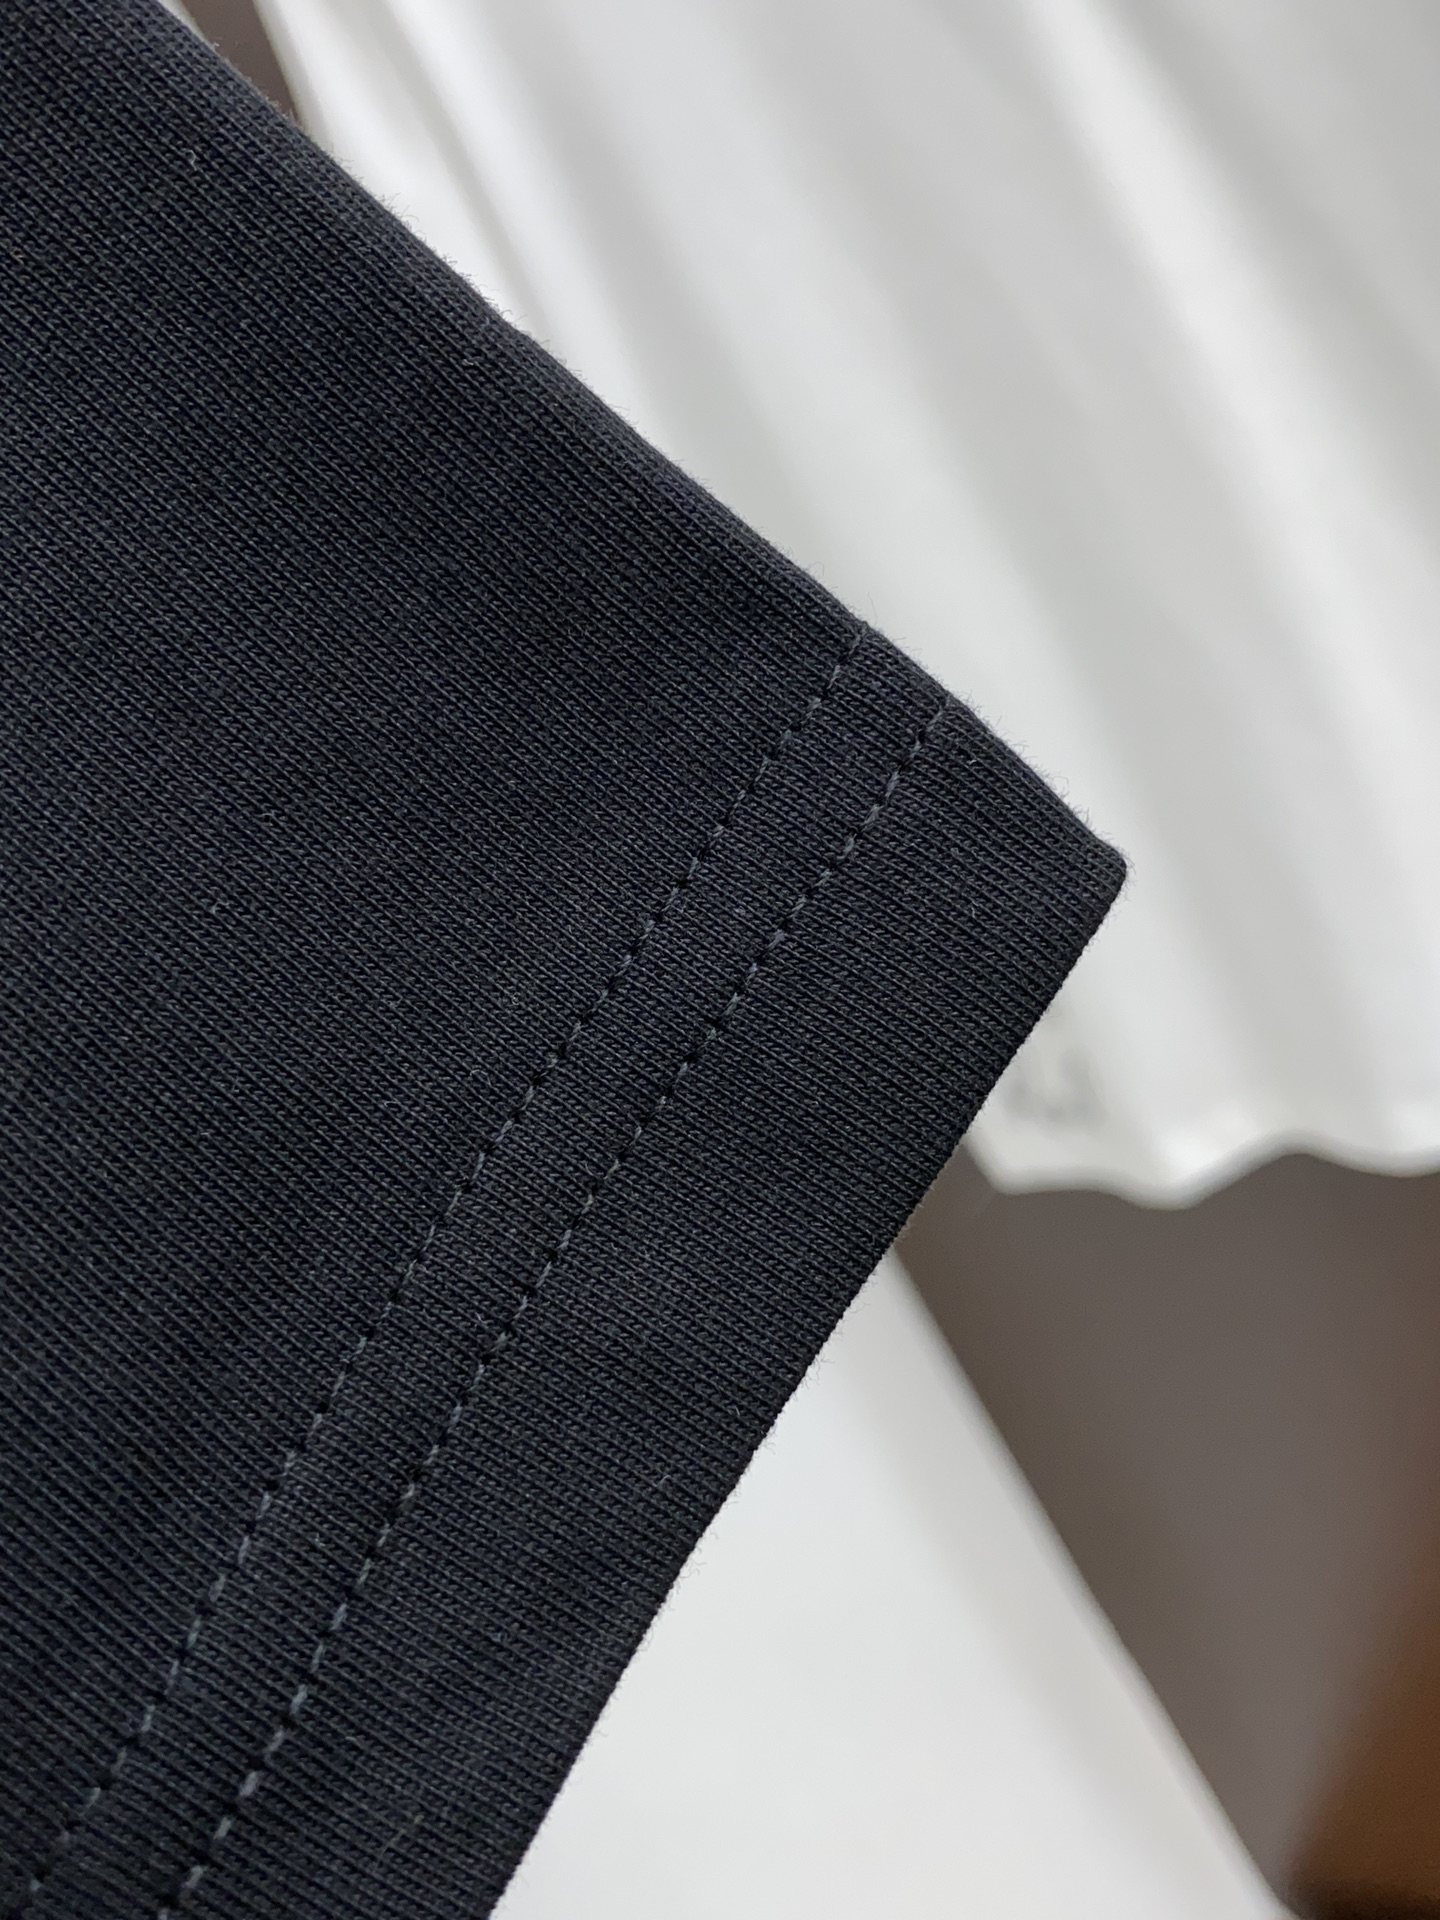 芬迪合身版型M-3xL24春夏早春新款短袖T恤顶级制作工艺进口纯棉面料手感细腻每个字母饱满立体清晰,一眼